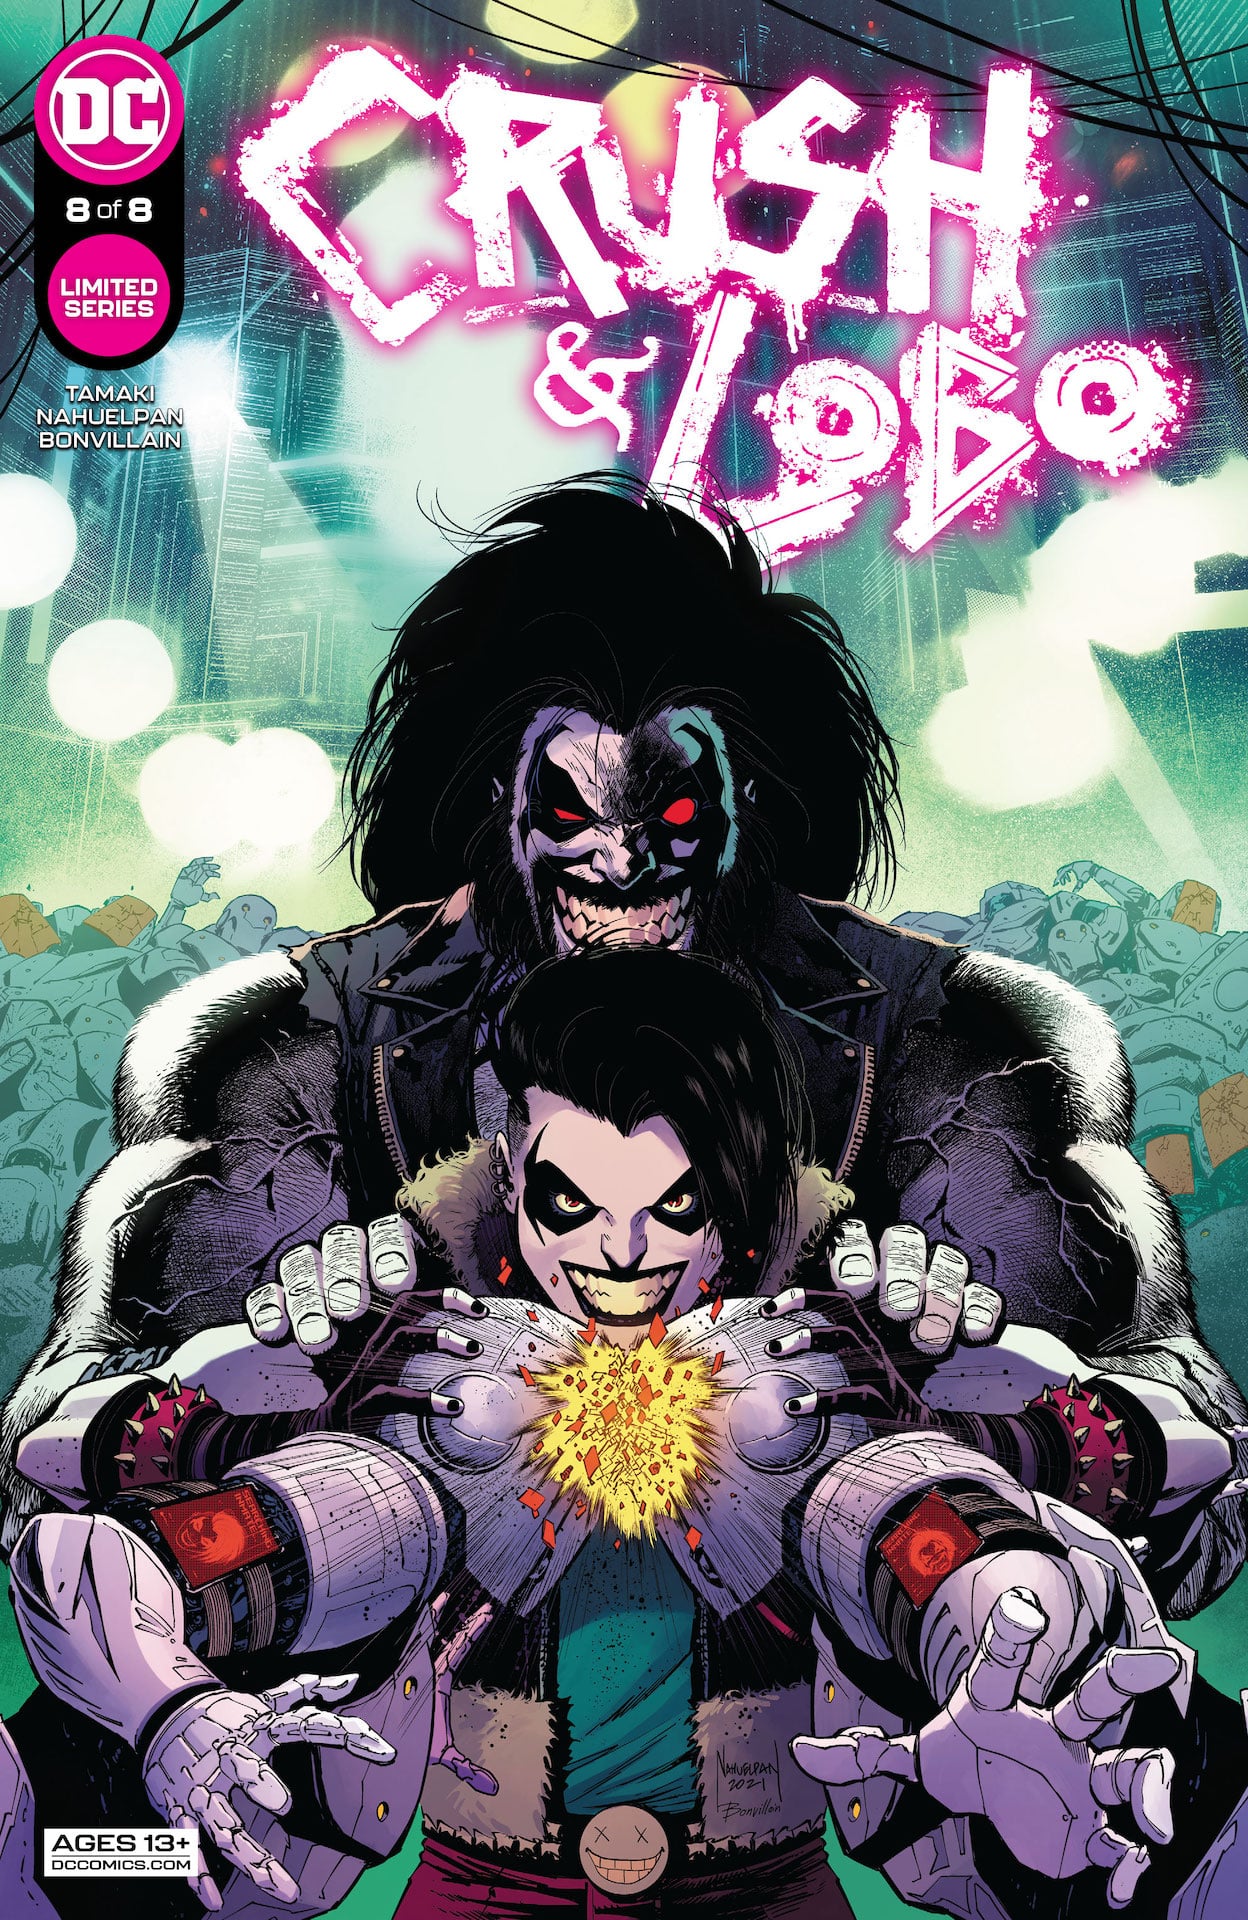 DC Preview: Crush & Lobo #8